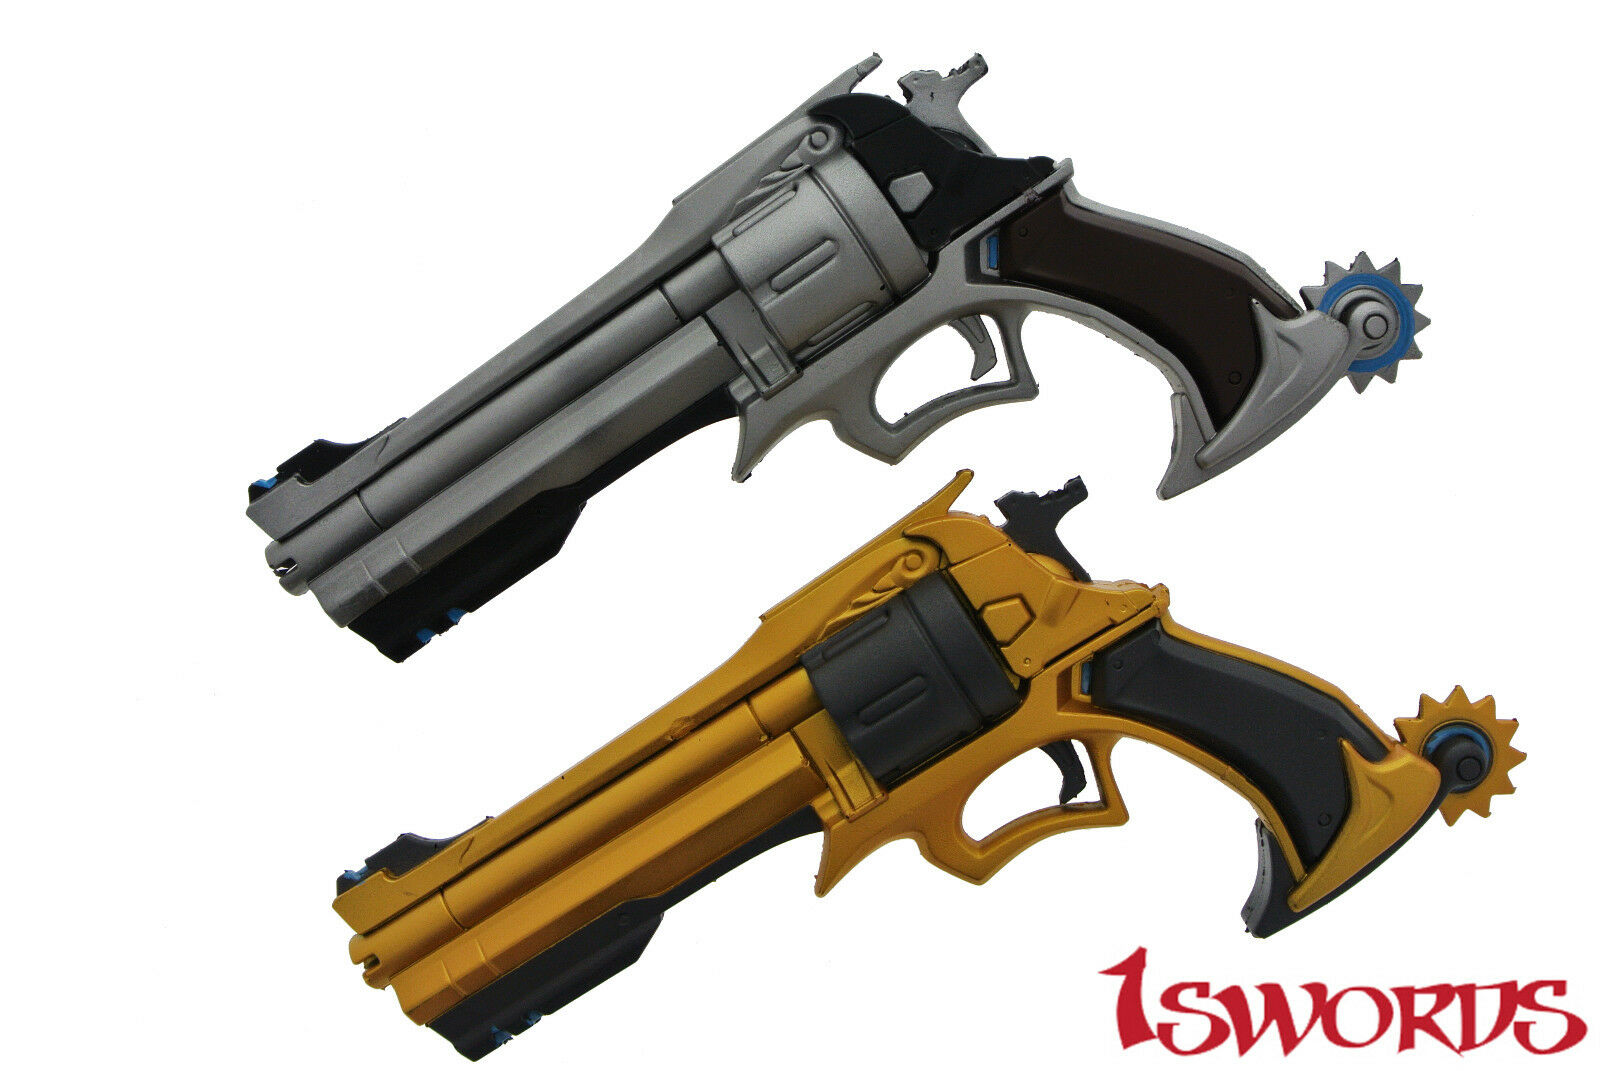 Overwatch Ow Jesse Mccree Gun Weapon Replica1:1 Scale Cosplay Prop Handgun